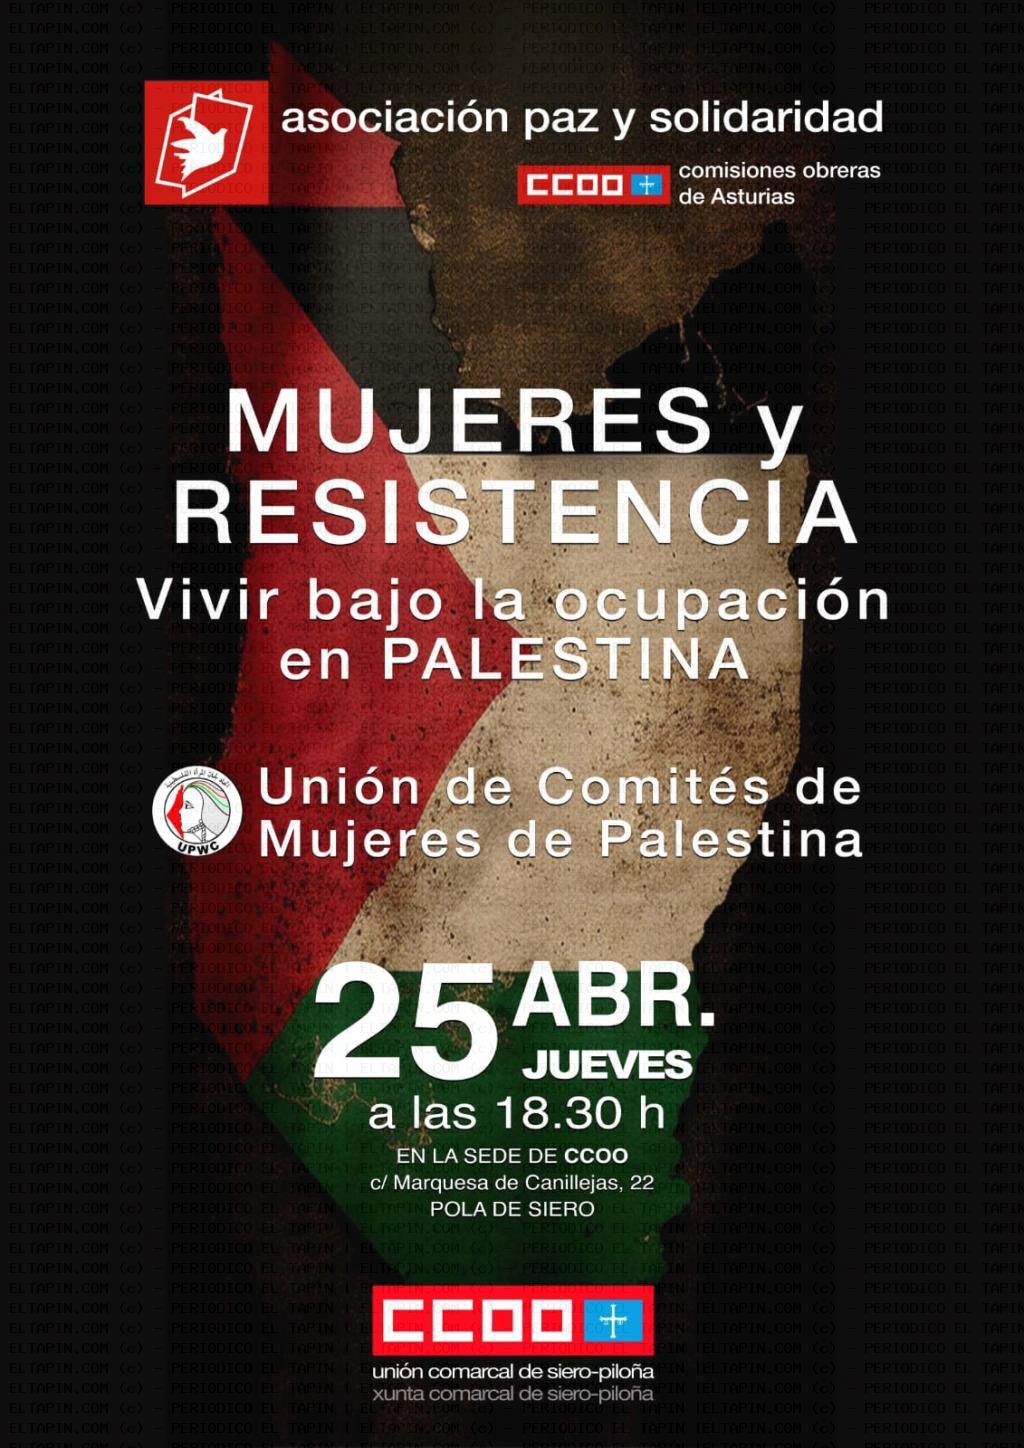 El Tapin - La Unión Comarcal de CCOO Siero-Piloña organiza la charla "Unión de Comités de Mujeres de Palestina"